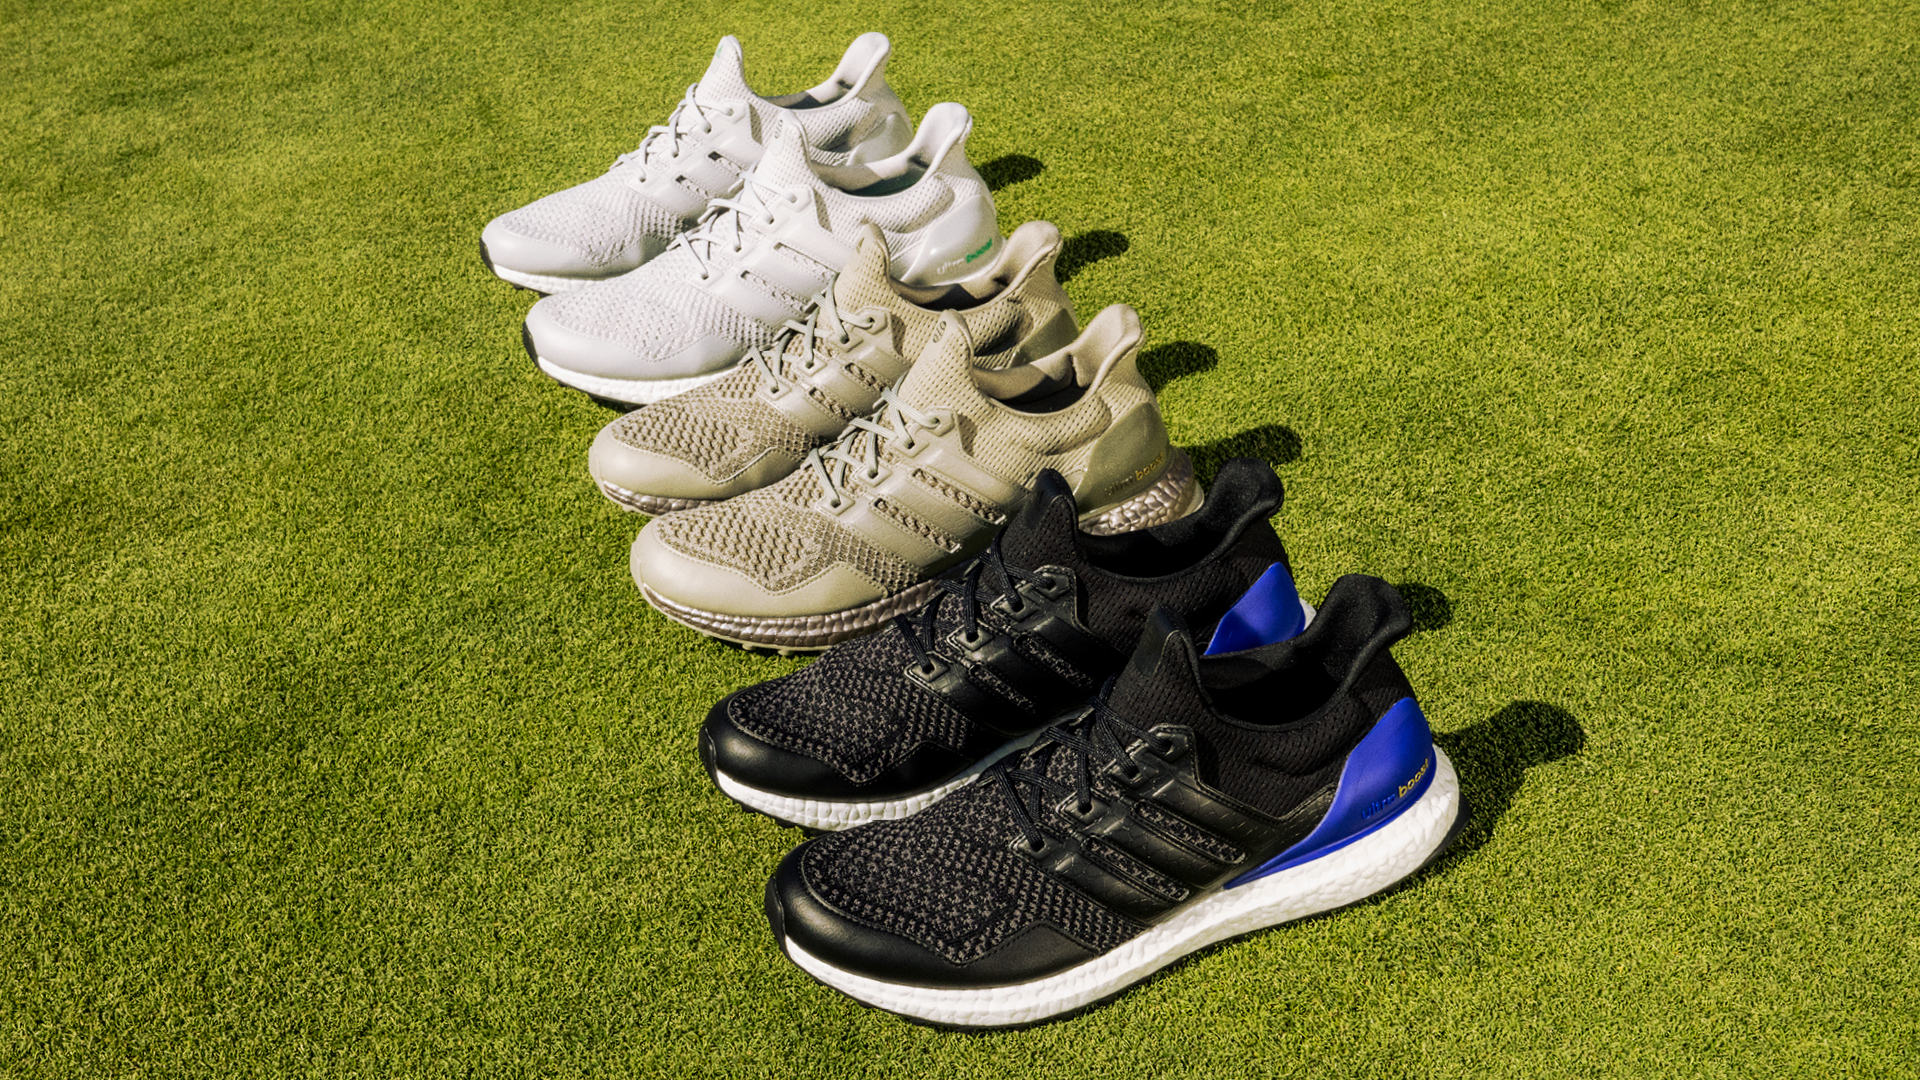 Adidas releases first Ultraboost Golf Shoe | Golf Equipment: Clubs, Balls, | Golf Digest